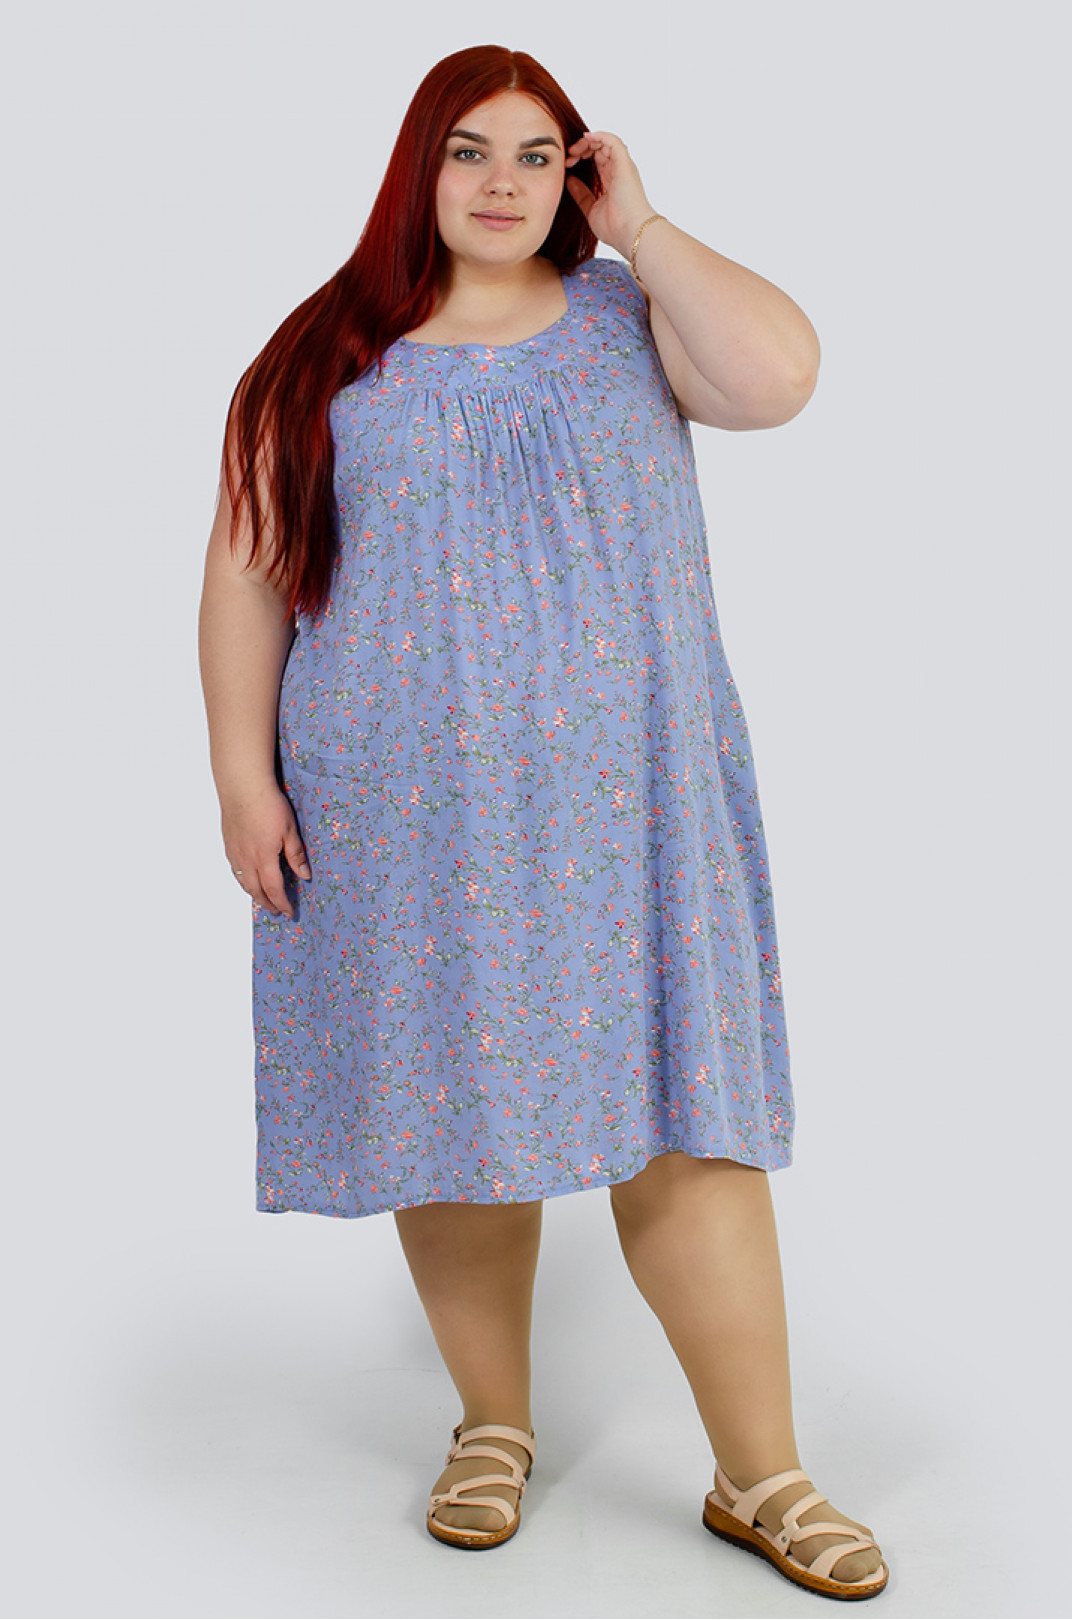 Сарафан-сукня в принт мільфльор великих розмірів